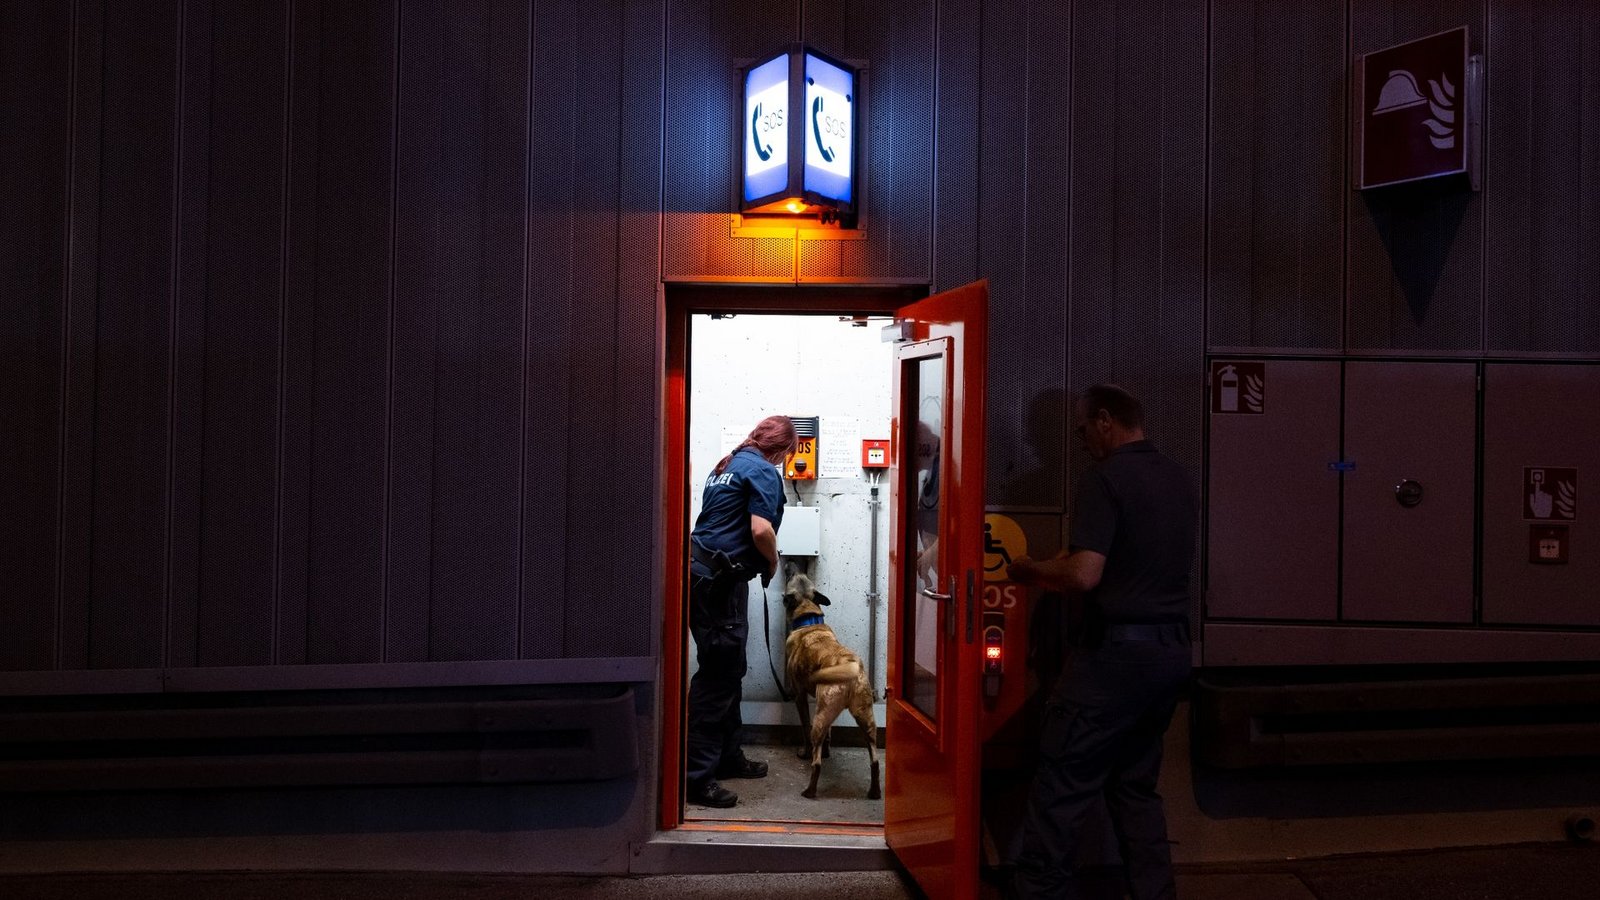 Polizisten durchsuchen mit Sprengstoffspürhund einen Tunnel auf der Protokollstrecke des G7-Gipfels, der kommende Woche auf Schloss Elmau stattfindet.Foto: Sven Hoppe/dpa